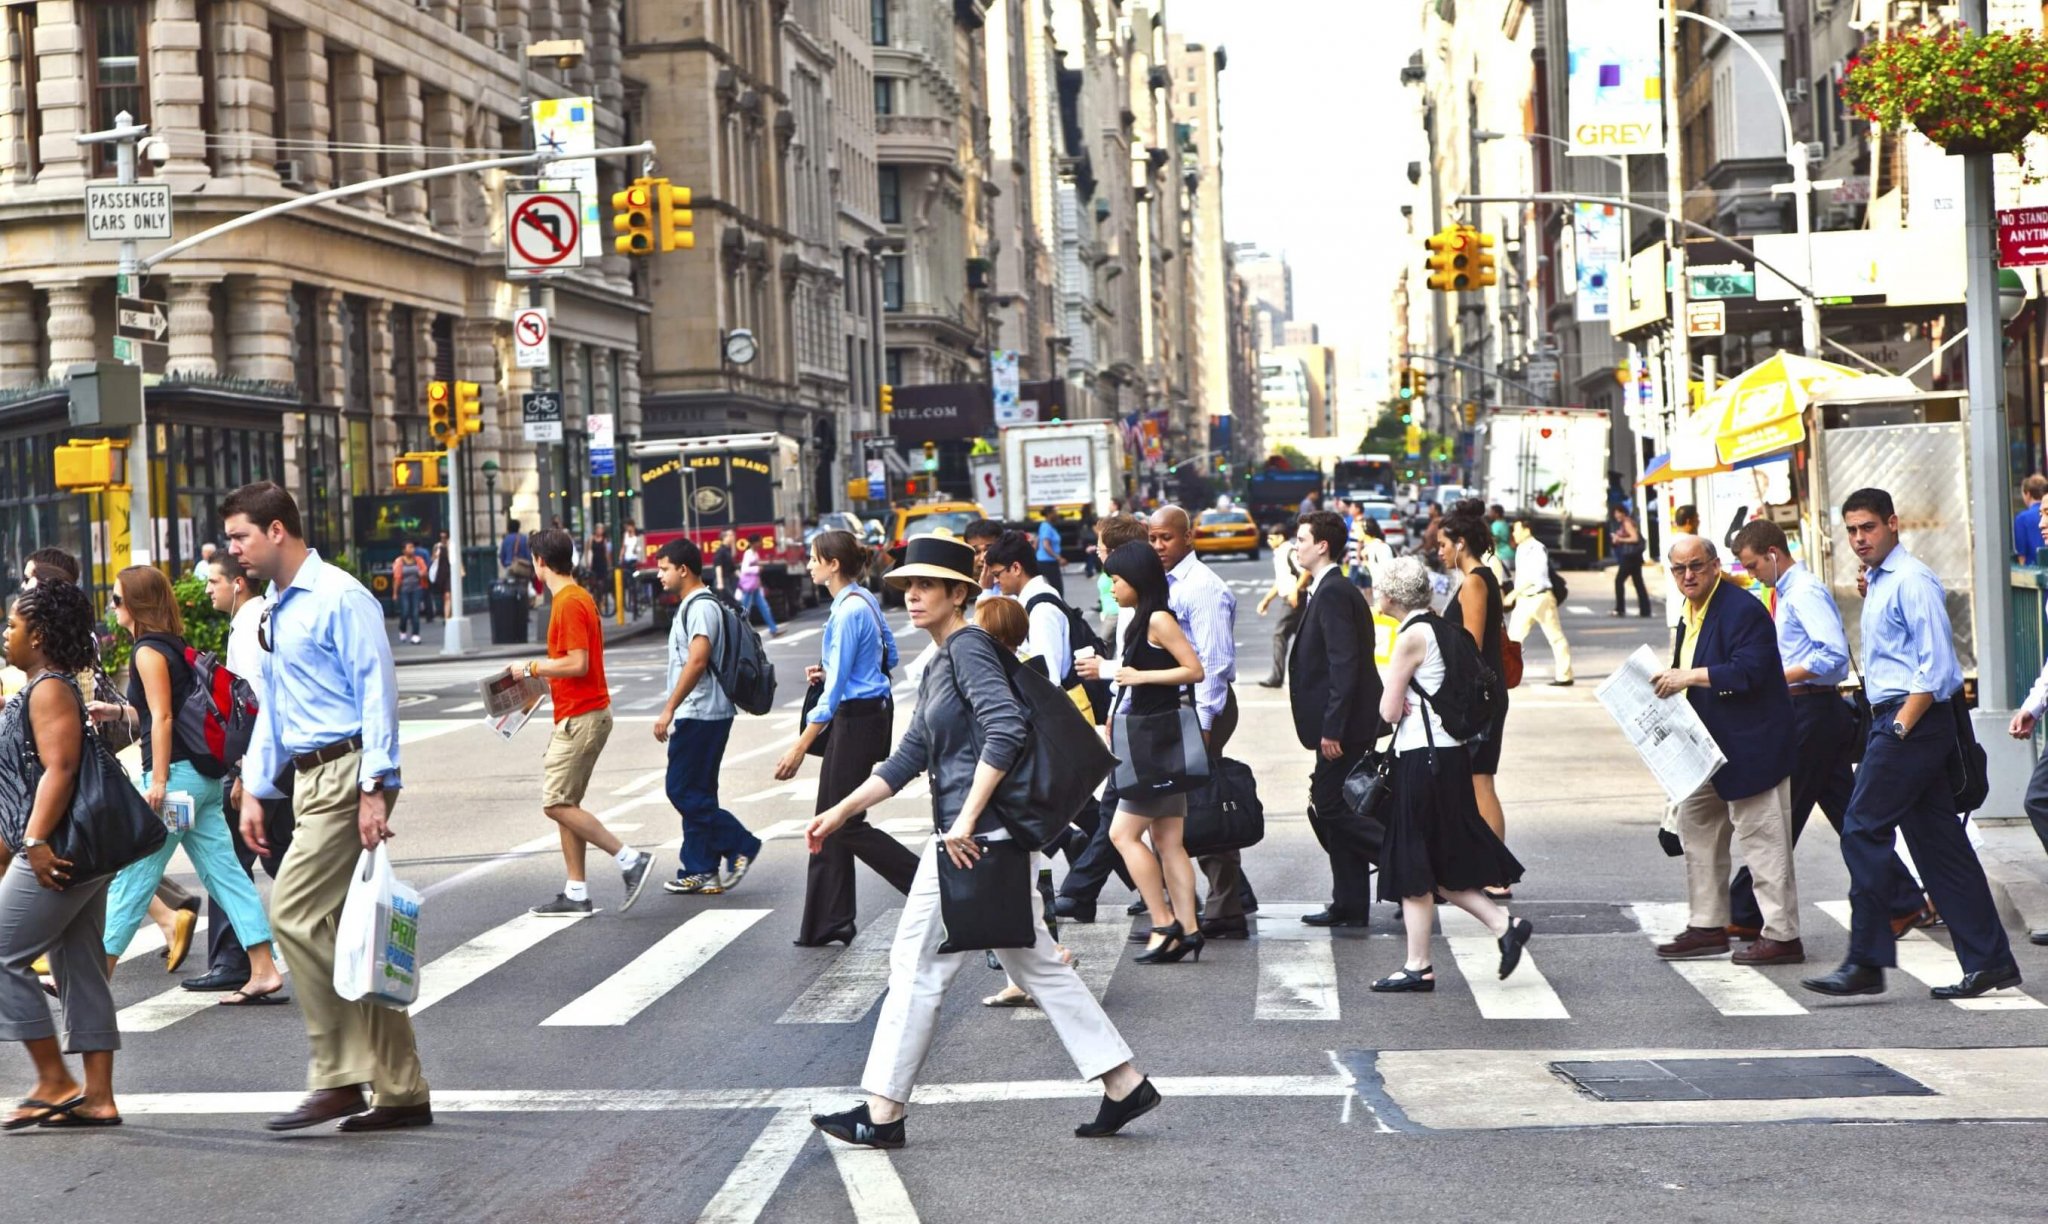 фотографии людей в движении на улице